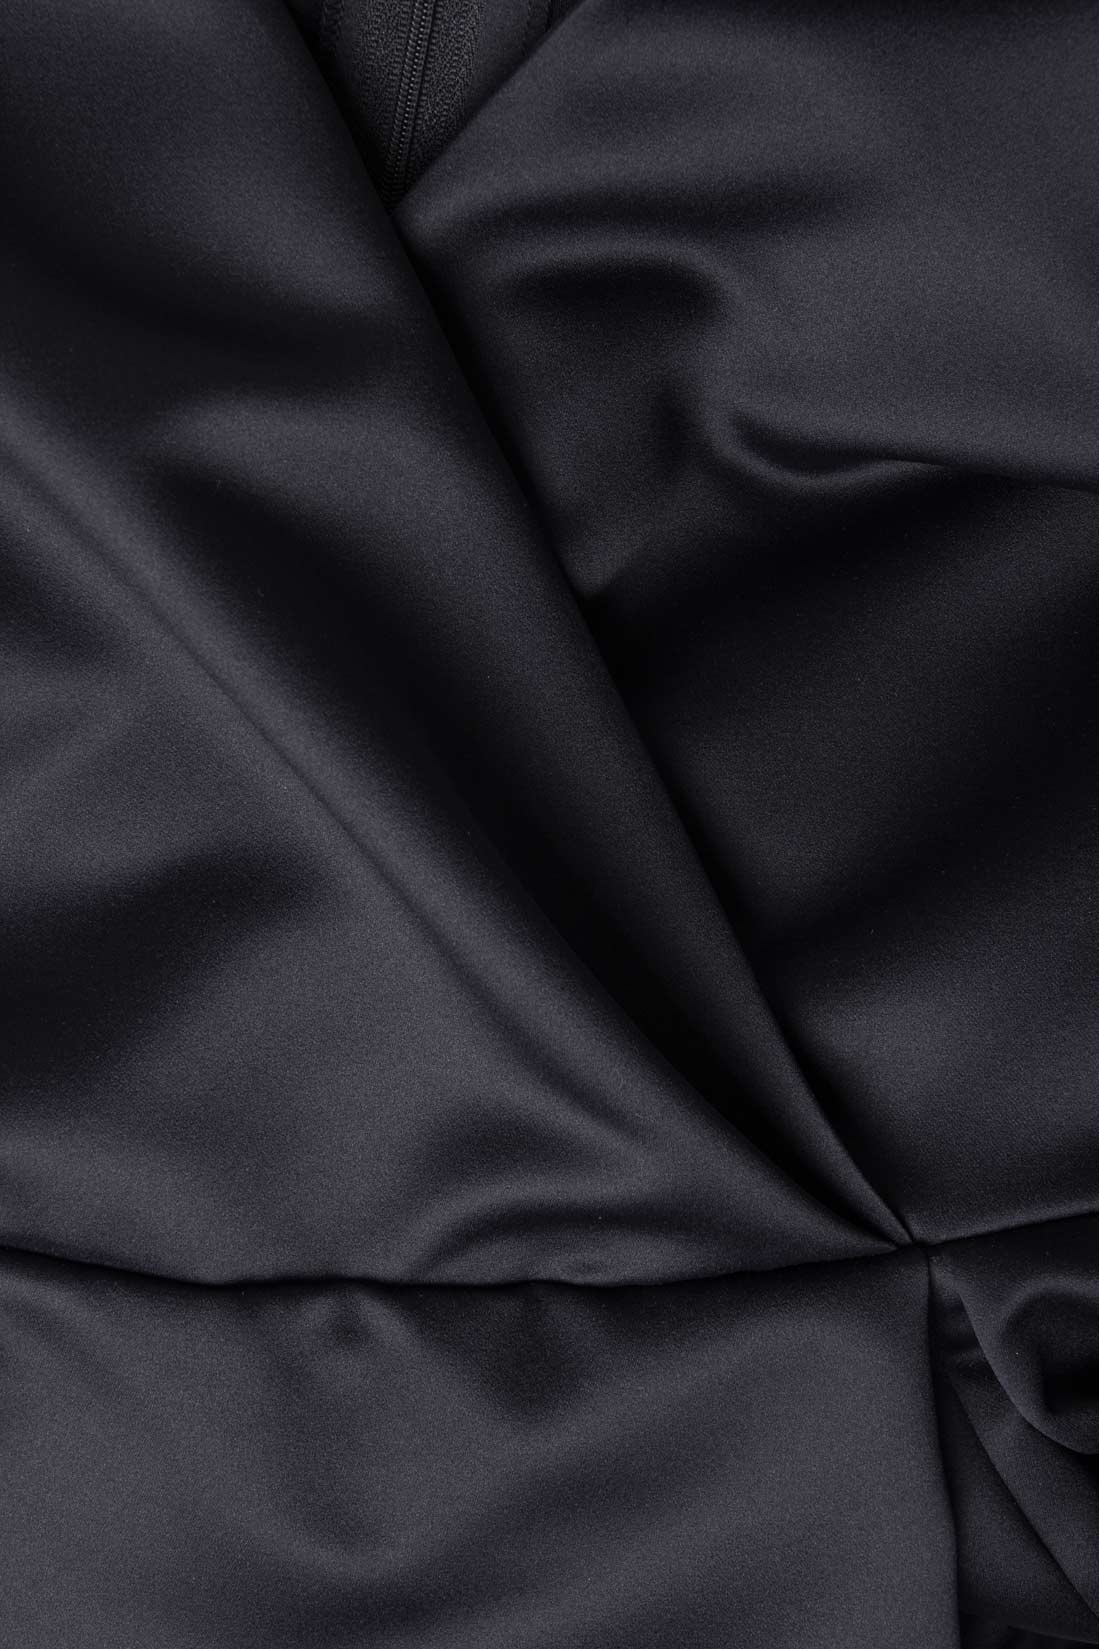 Robe longue noire en taffetas Claudia Castrase image 3